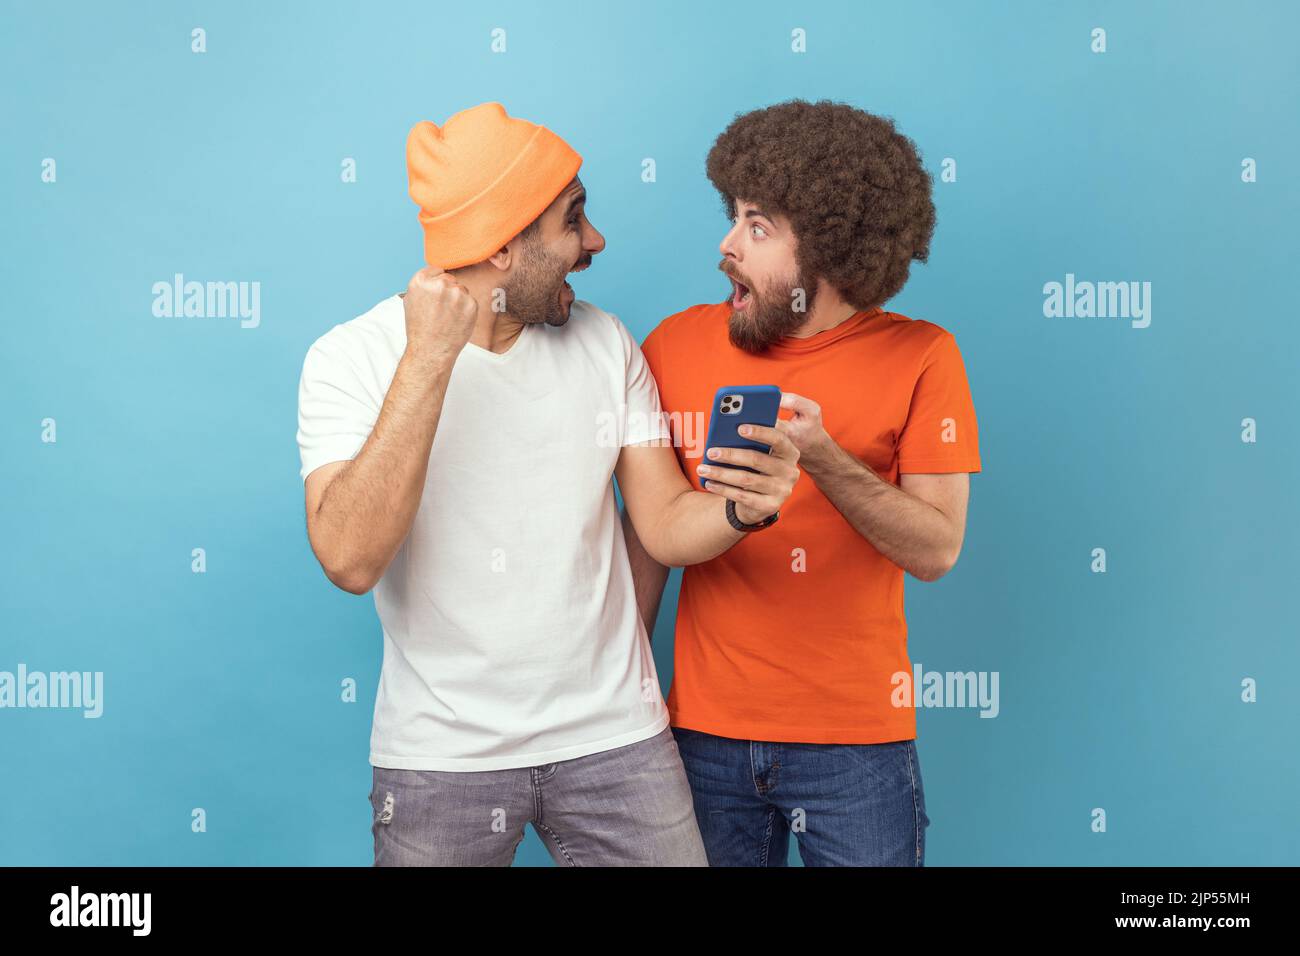 Retrato de dos emocionados hombres jóvenes adultos hipster de pie con teléfono móvil y celebrando el éxito, con puños apretados, mirándose entre sí. Estudio de interior aislado sobre fondo azul. Foto de stock